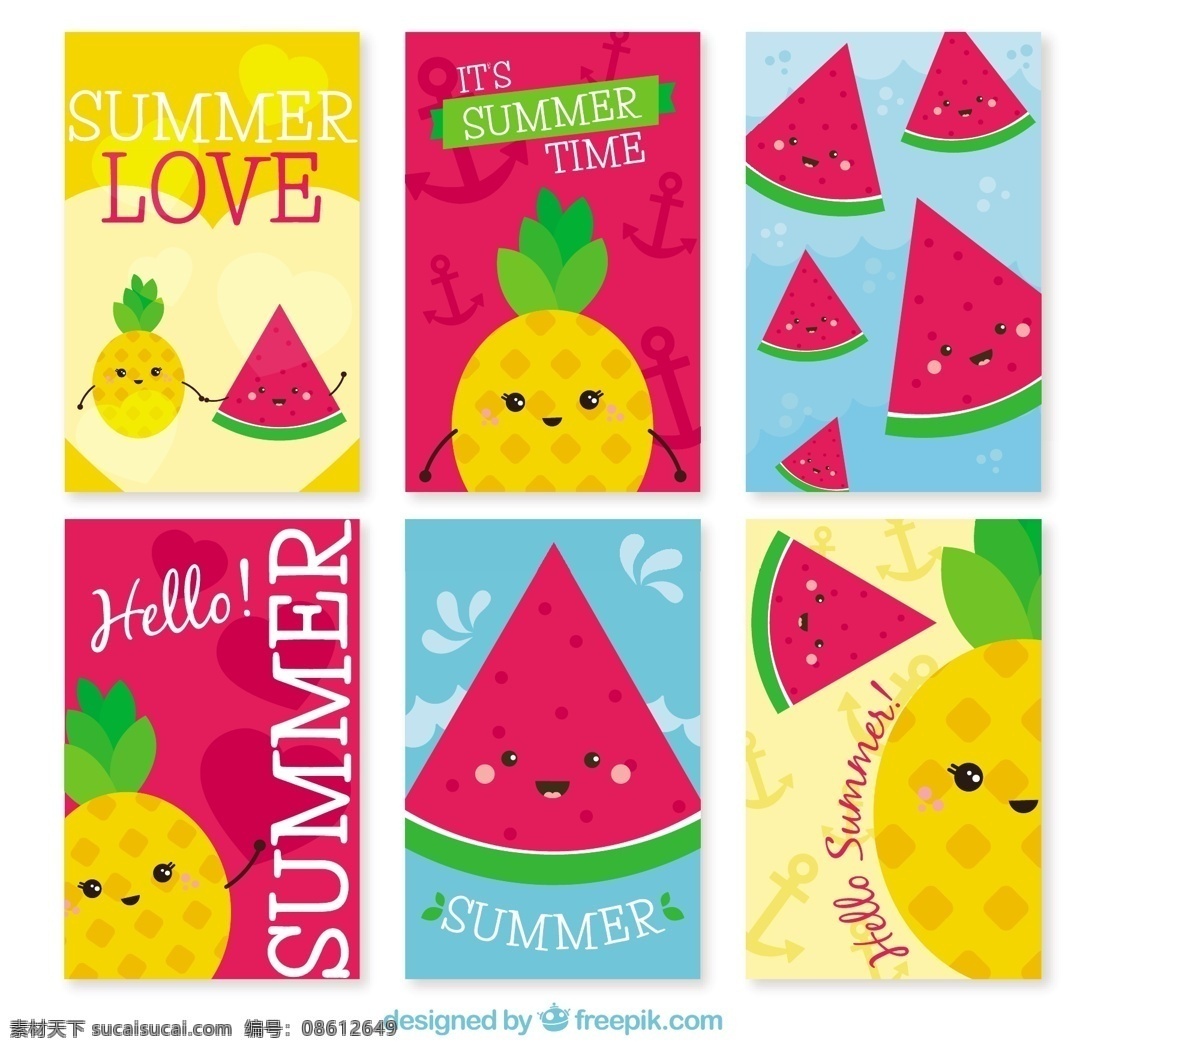 可爱 夏季 卡 品种 果实 性状 贺卡 模板 人物 水果 色彩 节日 平面 平面设计 娱乐 菠萝 卡片 装饰 度假 搞笑 西瓜 季节